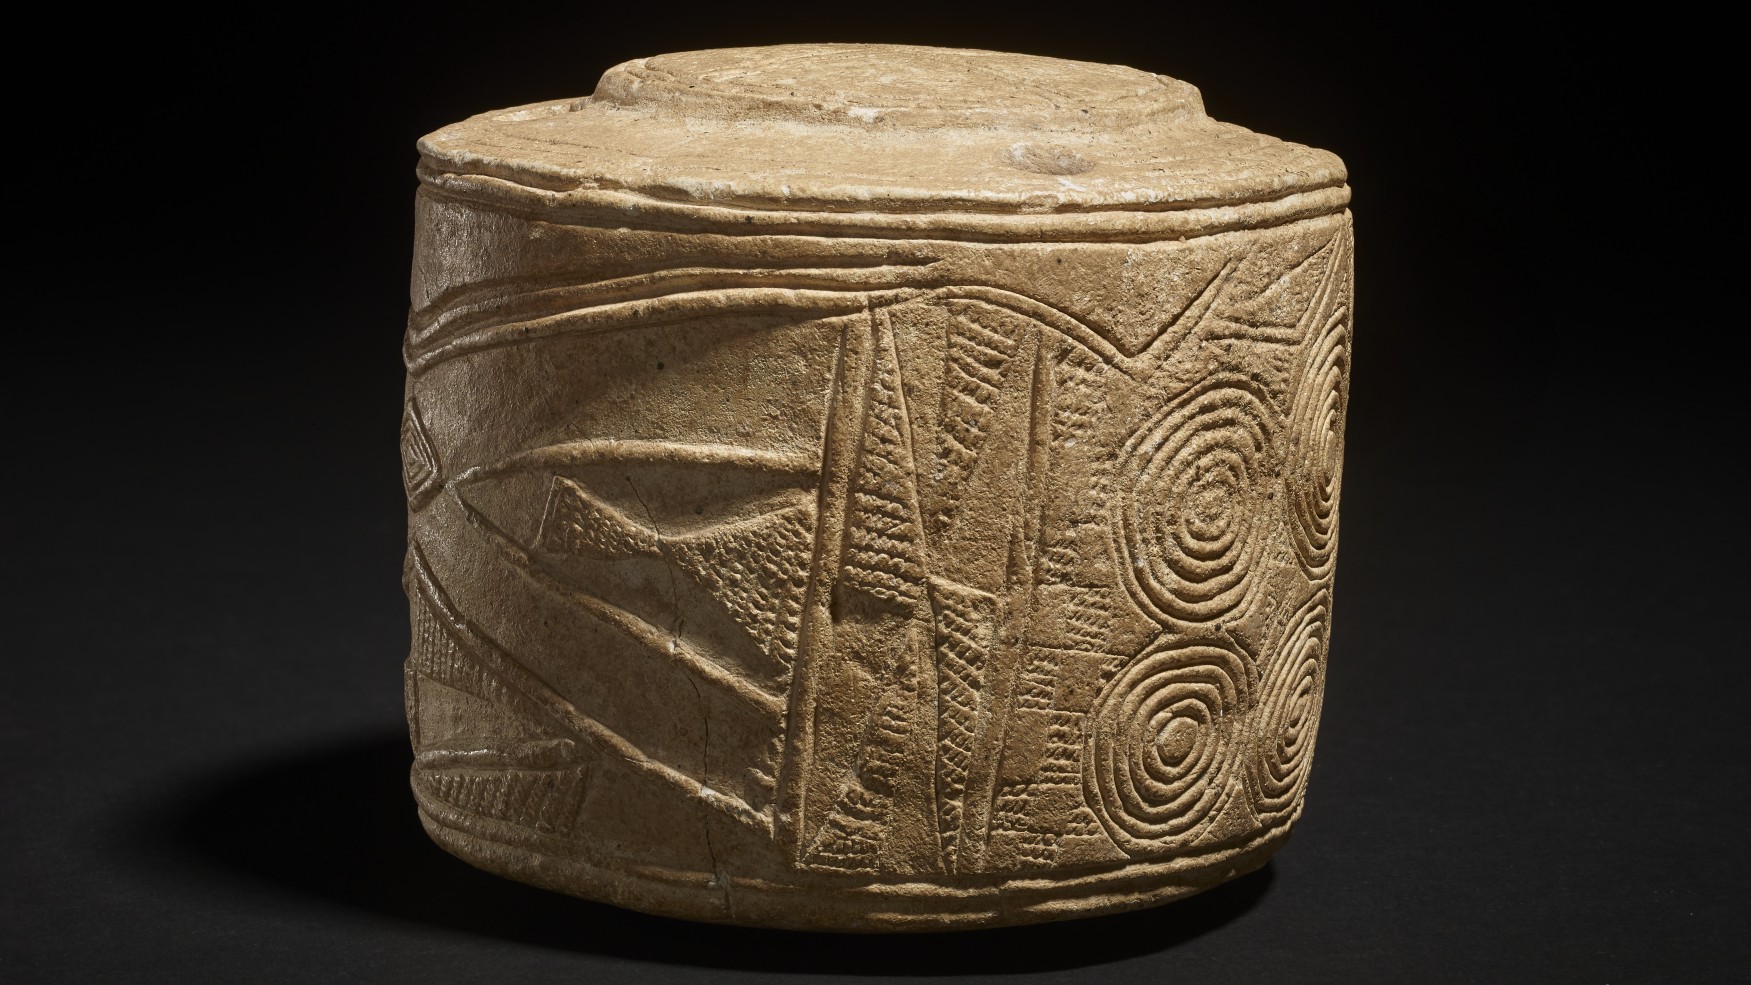 Die Motive finden sich rund um die Kreideskulptur wieder.  Ähnliche Motive wurden auf anderen Artefakten in Großbritannien und Irland gefunden, die ebenfalls 5.000 Jahre alt sind.